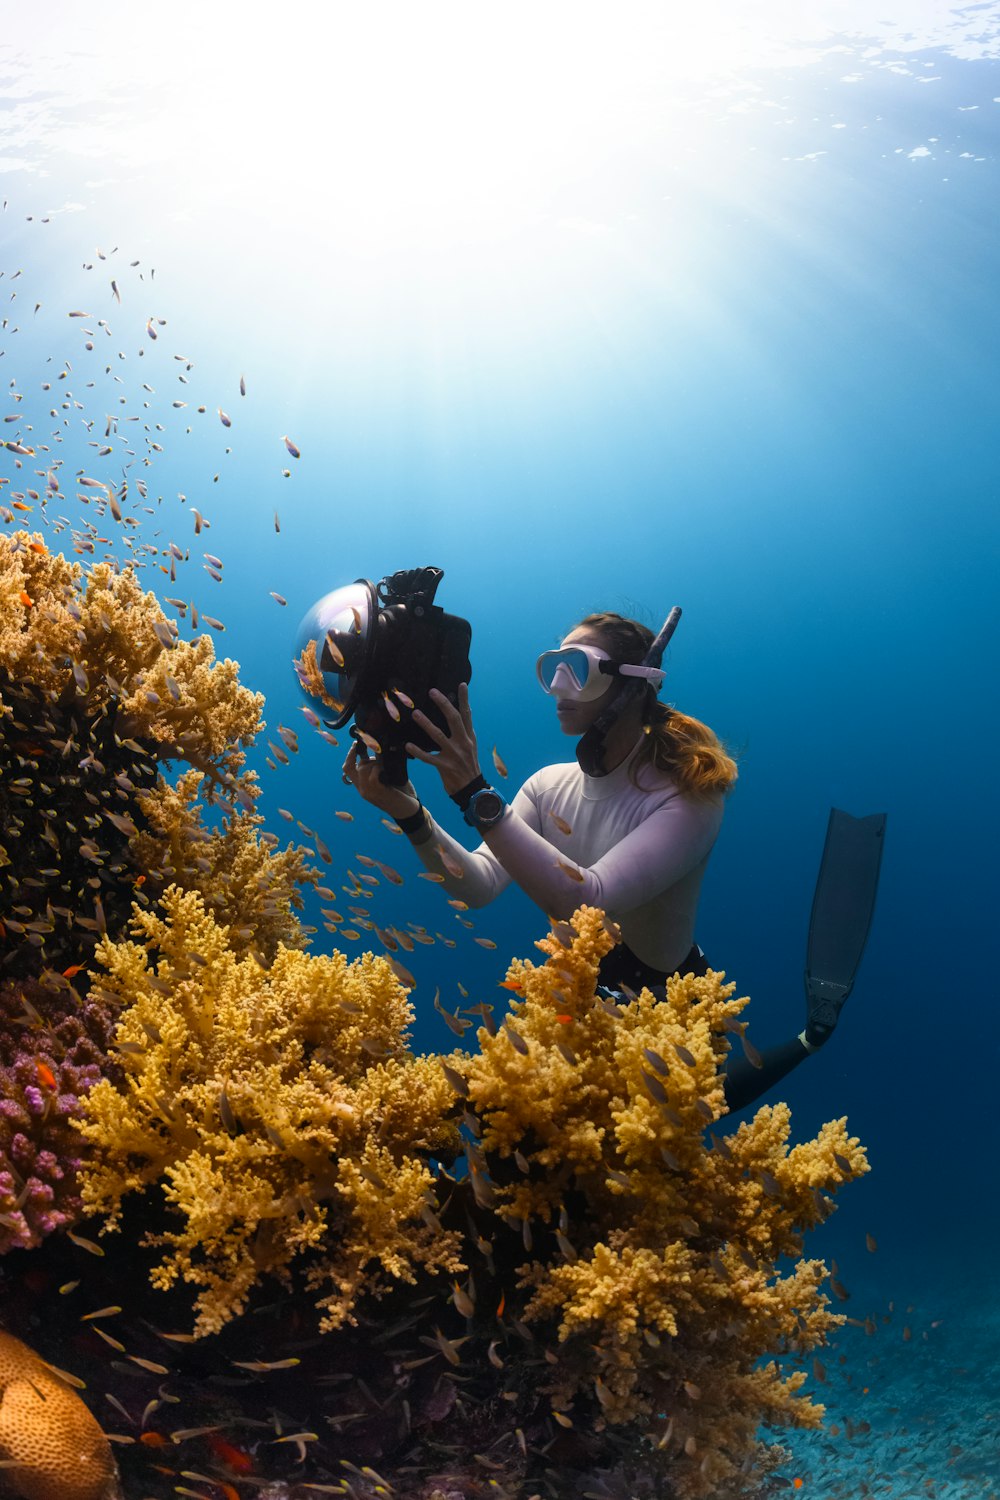 한 여자가 산호초 사진을 찍고 있다